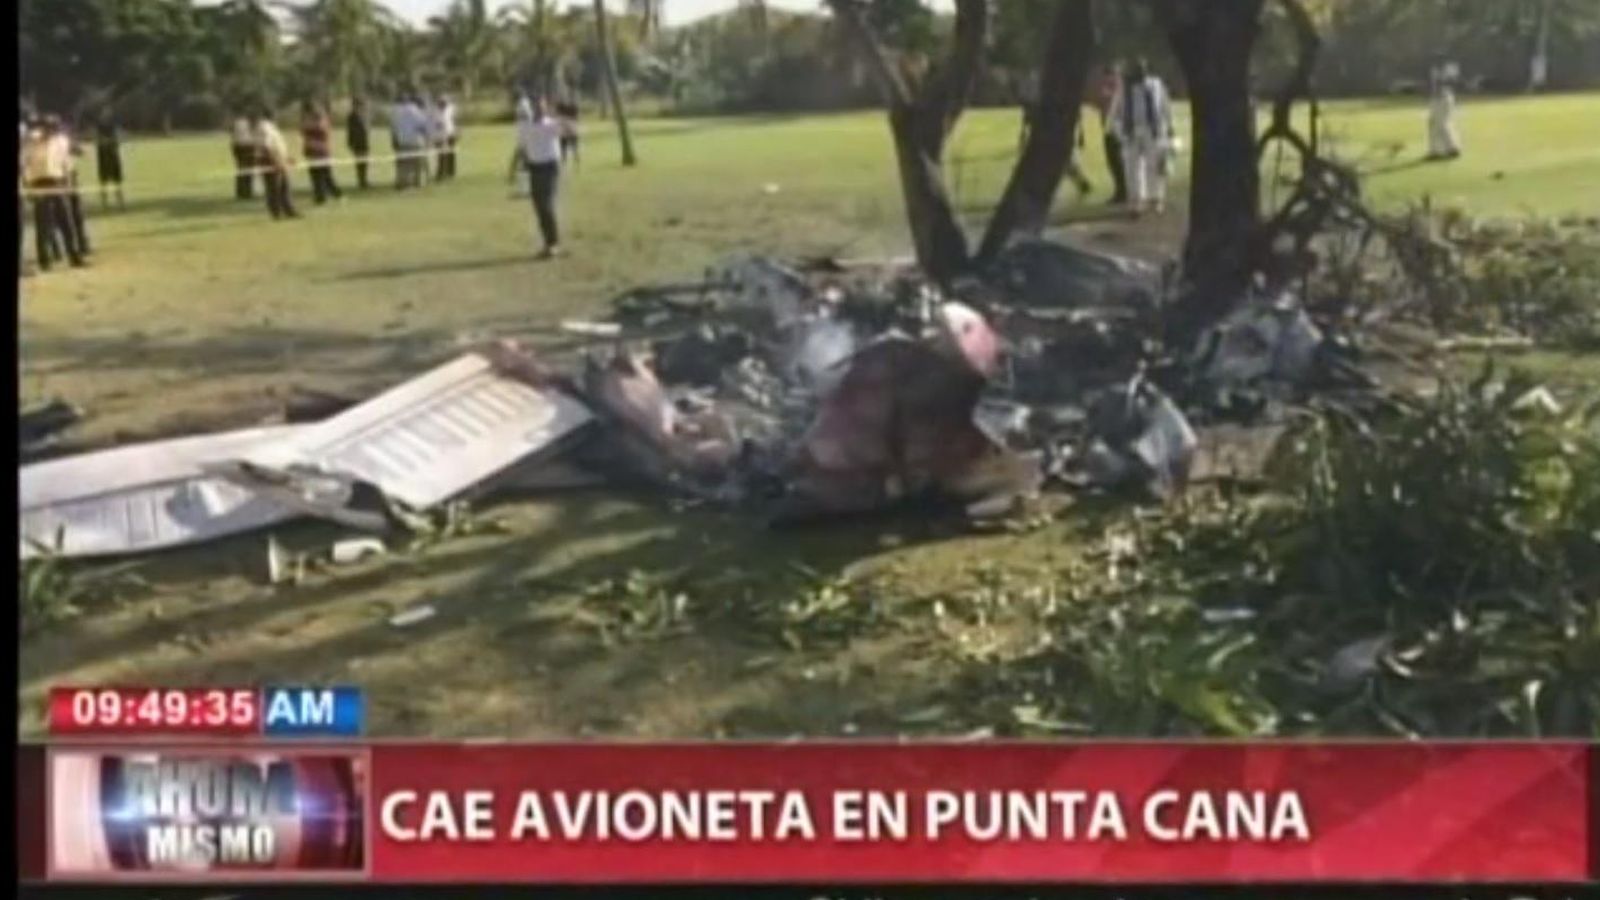 Foto: Imagen de la aeronave siniestrada distribuida por la televisión dominicana (YOUTUBE)